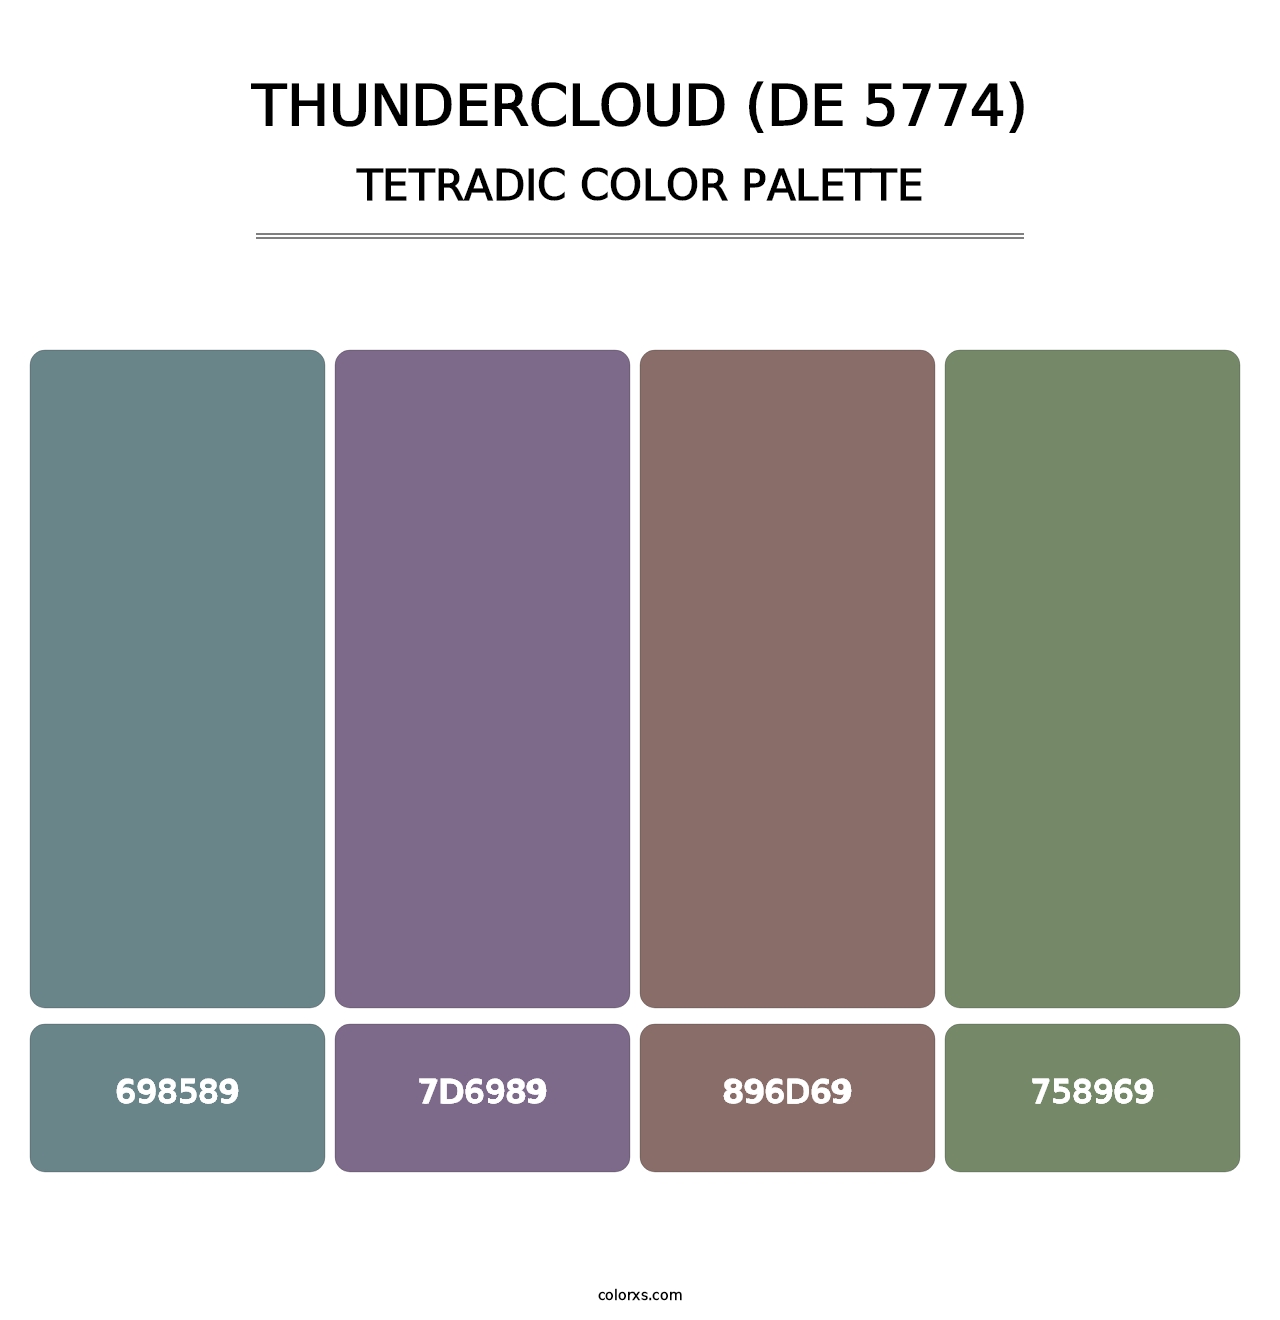 Thundercloud (DE 5774) - Tetradic Color Palette